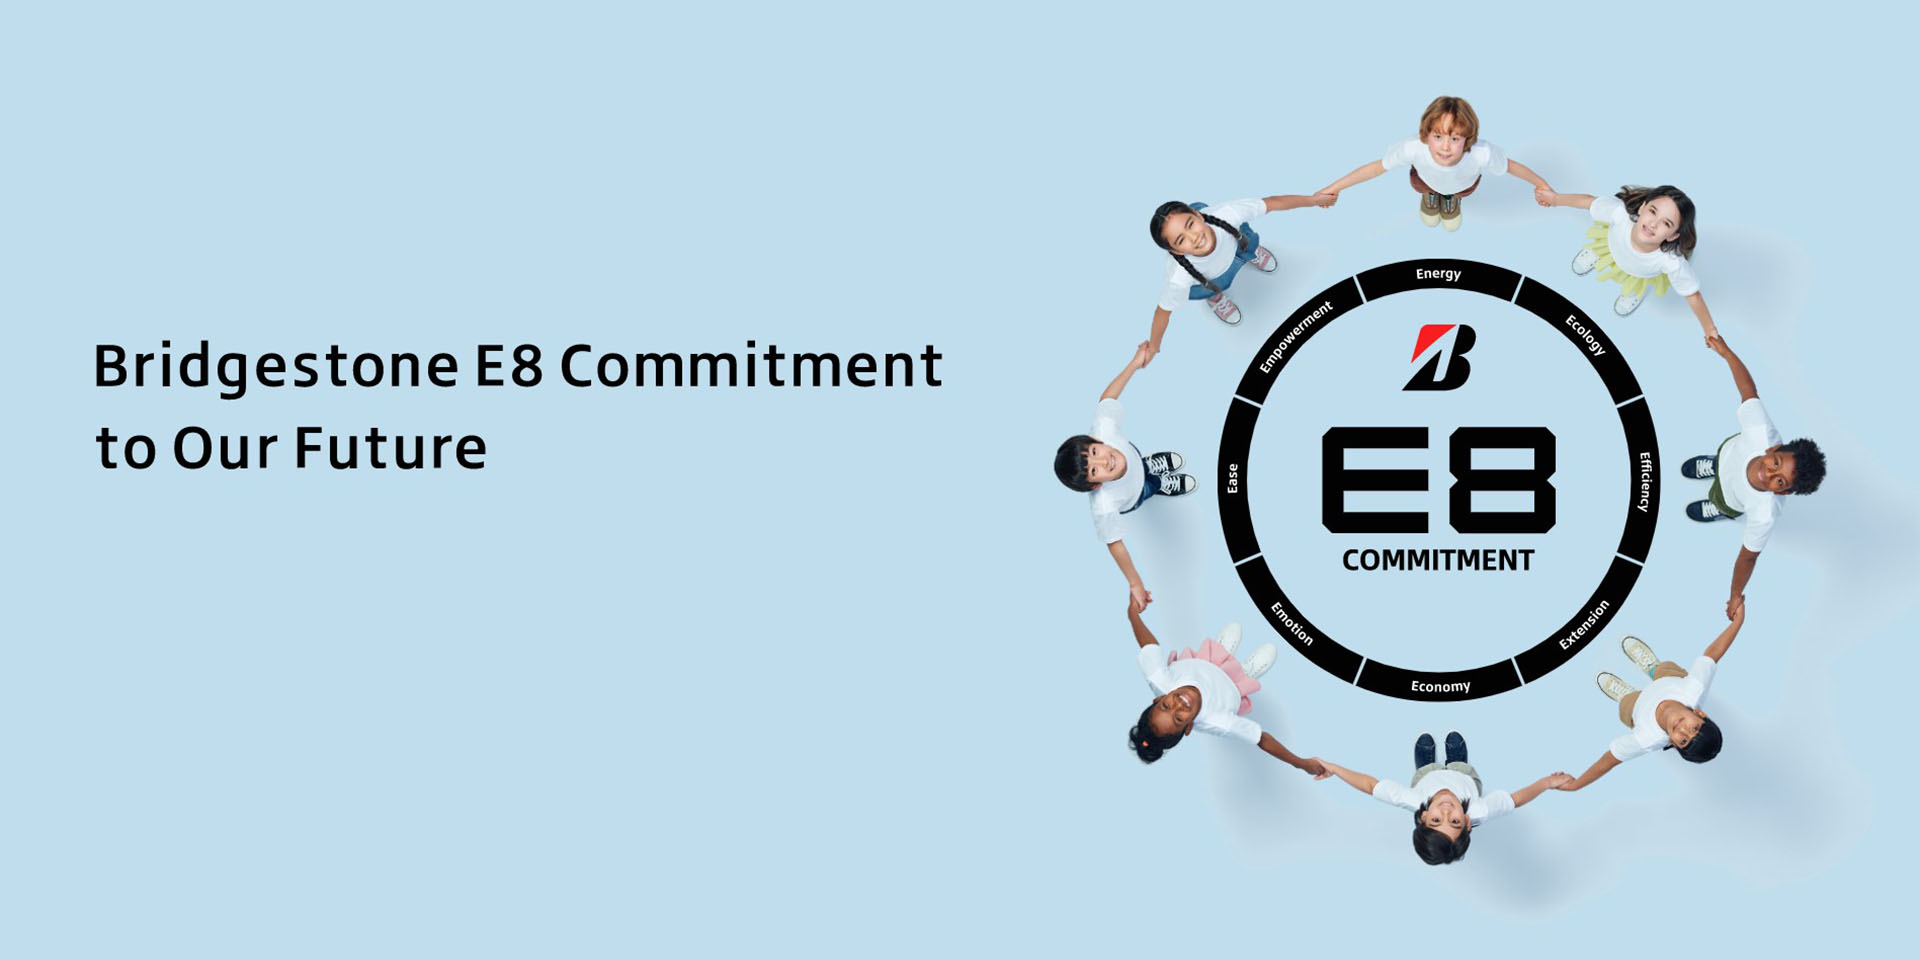 Bridgestone E8 Commitment to Our Future